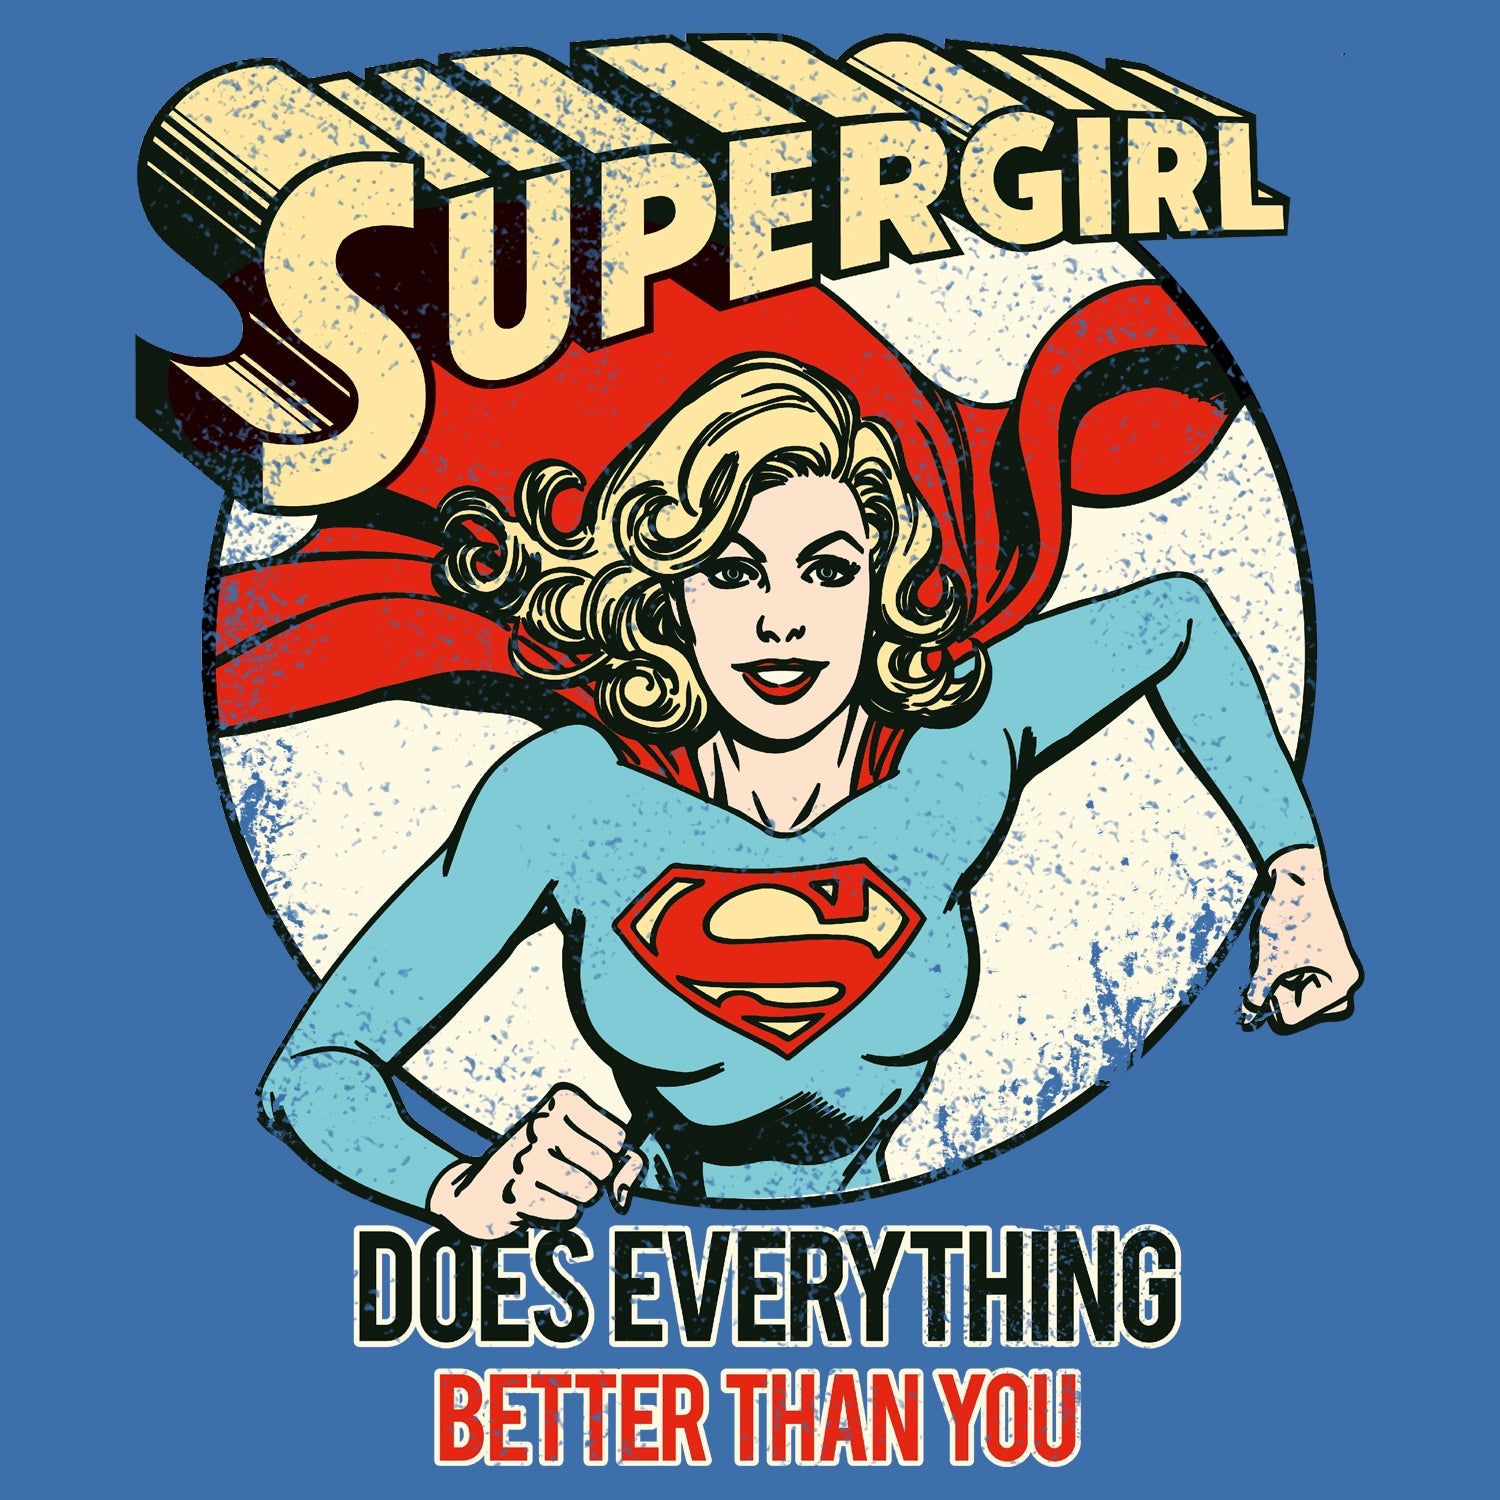 DC Comics Supergirl Text Better Than You Official Women's T-shirt ()